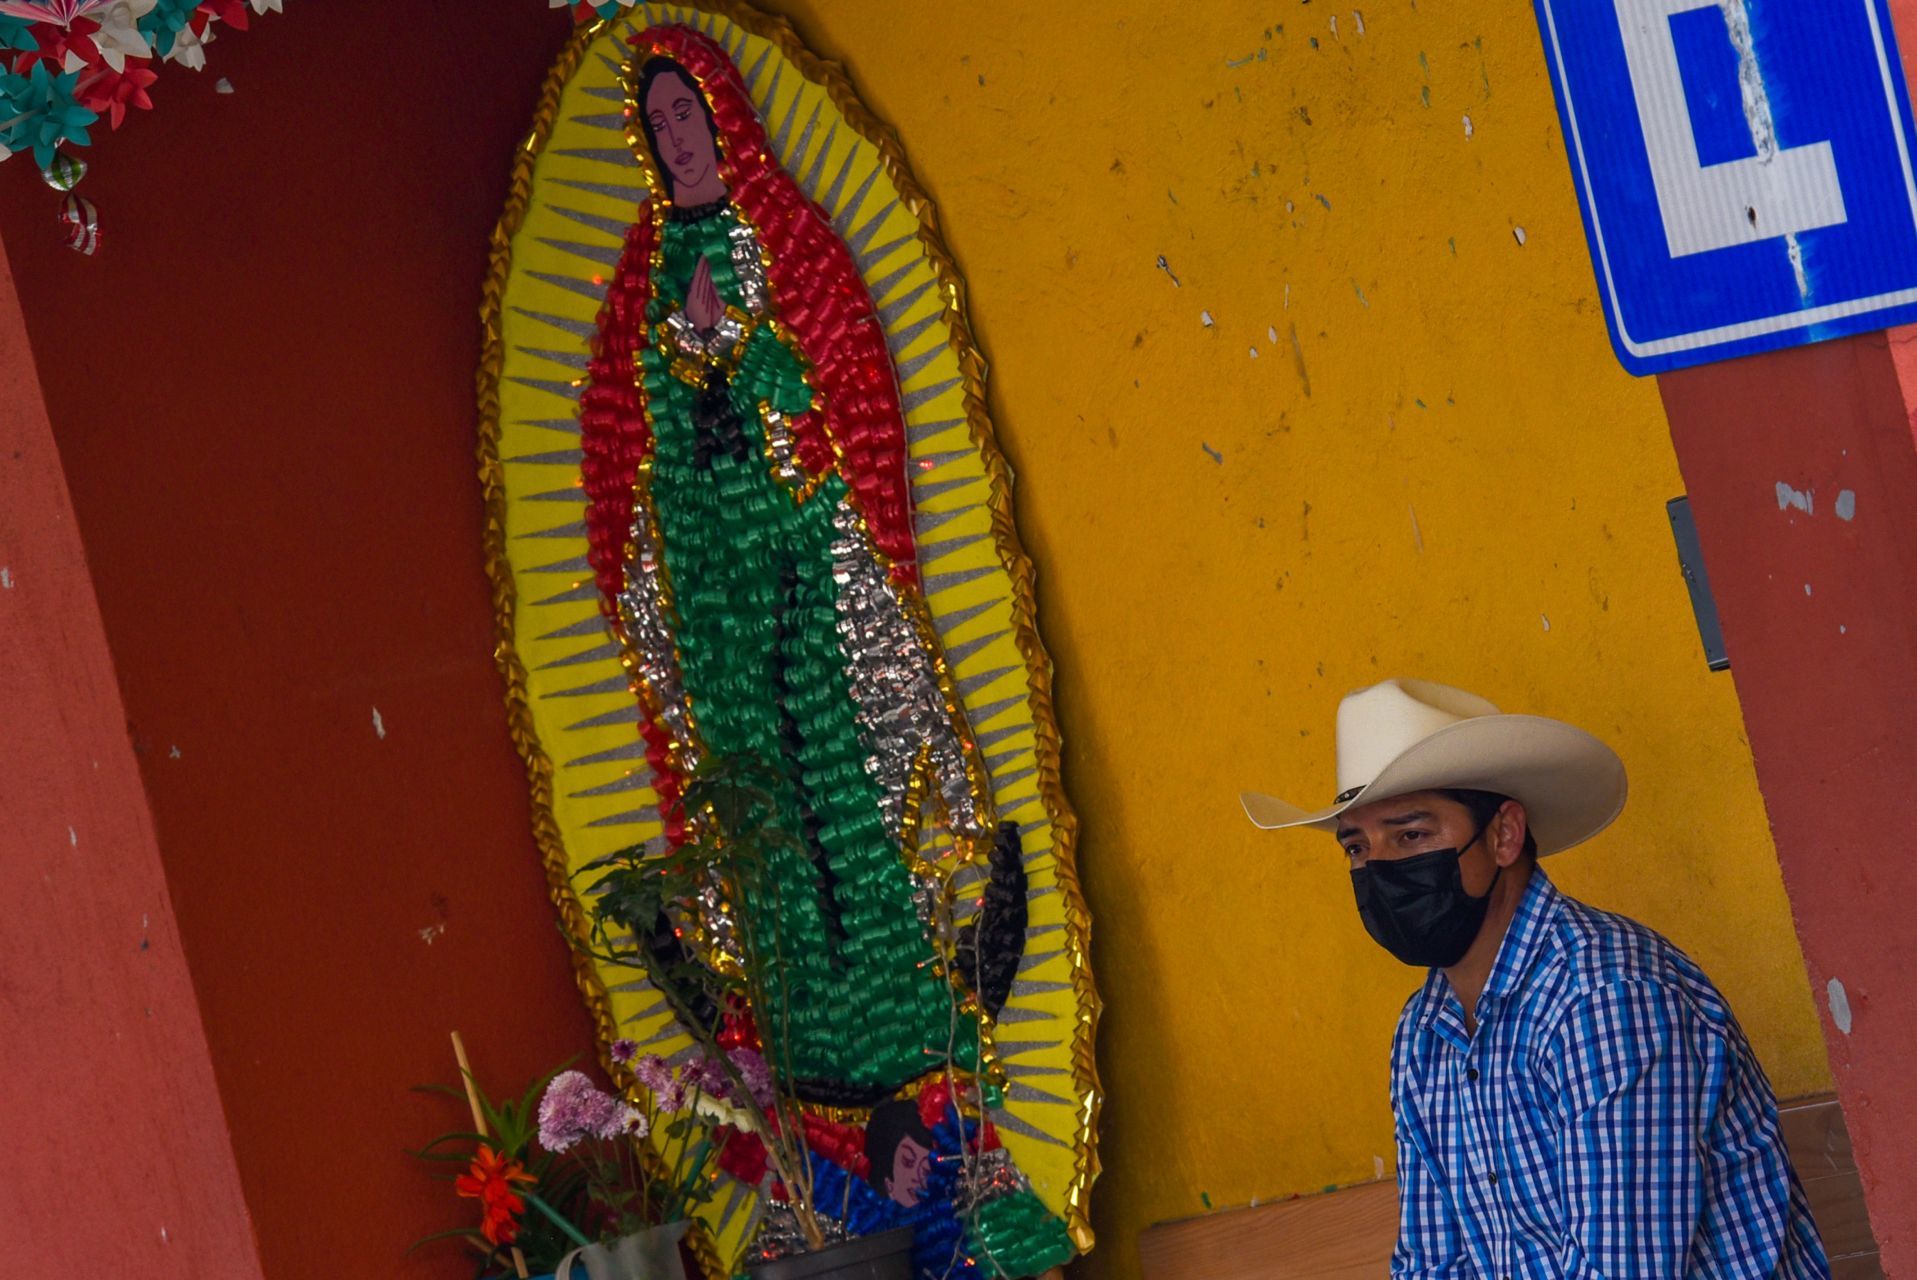 A unos días de la veneración de la Virgen de Guadalupe algunos altares en honor a la virgen Morena del Tepeyac ya están siendo adornados para la celebración del 12 de diciembre, que ante la contingencia por COVID-19 la Arquidiócesis de Toluca ha echo un llamado para no realizar festejos con reuniones, si no desde los hogares de los fieles católicos. Toluca, Estado de México, 10 de diciembre de 2020.